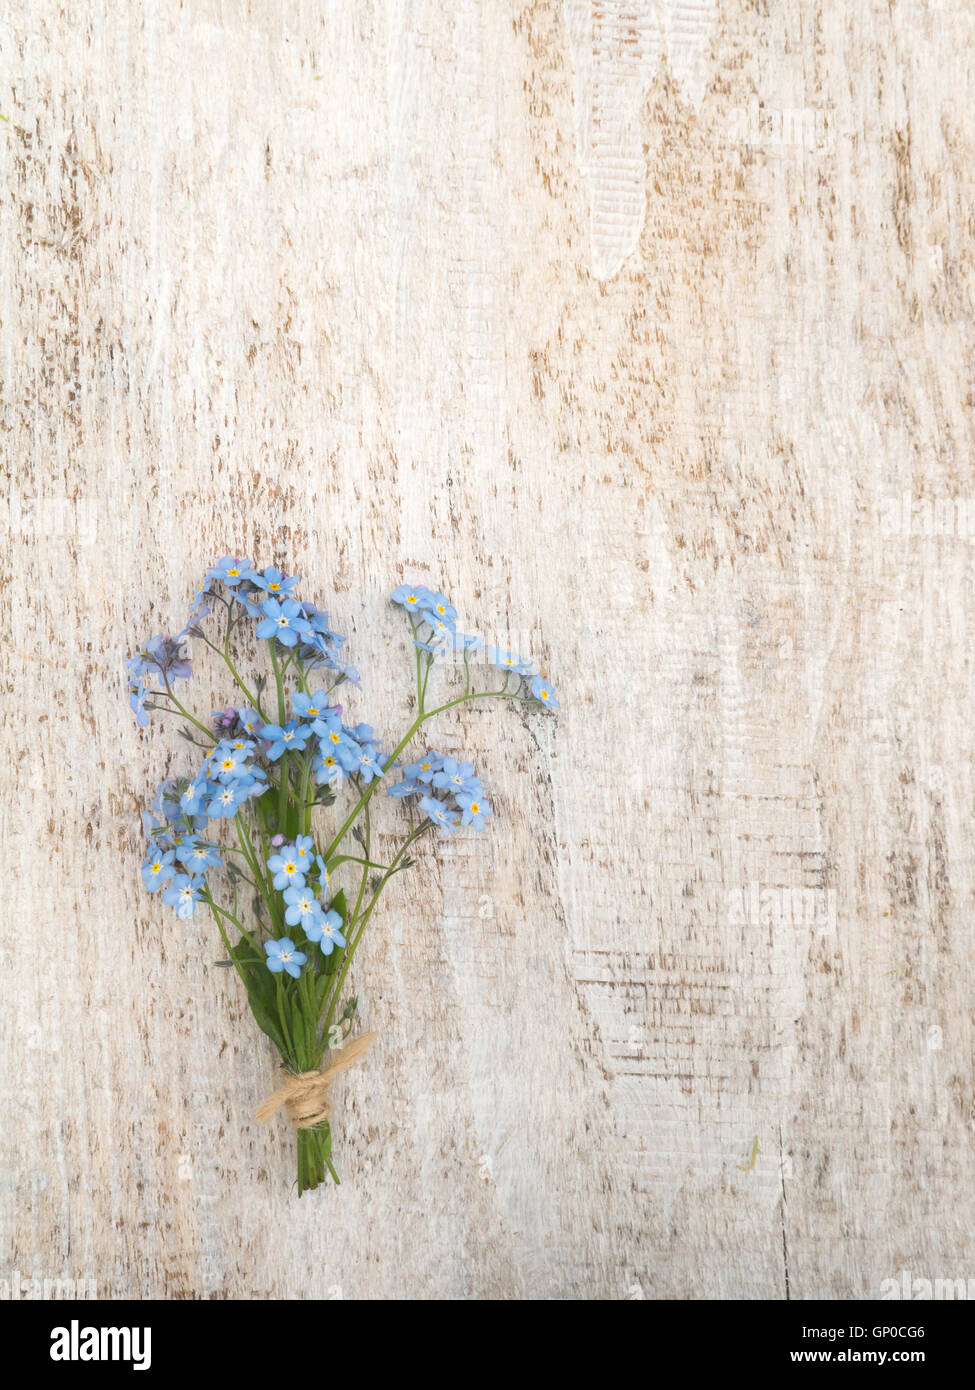 Blue Forget-me-not flores ramo atado con cuerda de yute en el rústico de madera con textura de fondo blanco Foto de stock